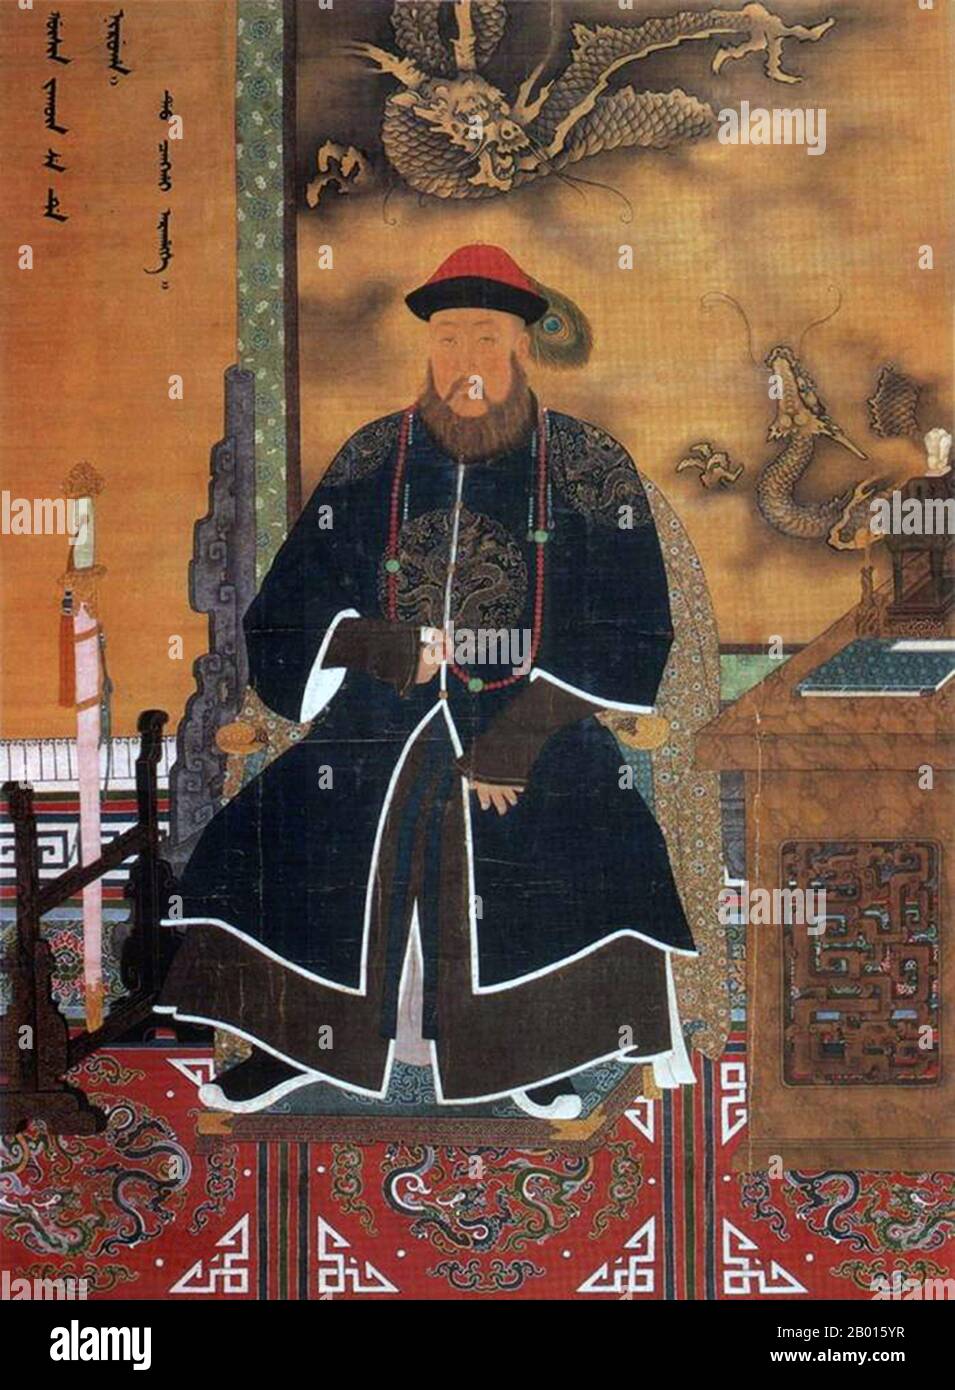 China: Dorgon (17. November 1612 – 31. Dezember 1650), auch bekannt als Prinz Rui, einer der einflussreichsten Mandschu-Fürsten in der frühen Qing-Dynastie. Hängende Schriftrolle Malerei, 17. Jahrhundert. Dorgon wurde in Yenden, Mandschurei (heute Xinbin, Provinz Liaoning), China, geboren. Er war der vierzehnte Sohn des Manchu-Anführers Nurhaci und Halbbruder von Kaiser Hong Taiji. Dorgon wurde einer der mächtigsten Prinzen und trug 1644 maßgeblich dazu bei, Mandschu-Truppen nach Peking zu bringen. Während der Regierungszeit von Hong Taiji nahm er an vielen militärischen Kampagnen Teil, einschließlich der Eroberungen der Mongolen und Koreas. Stockfoto